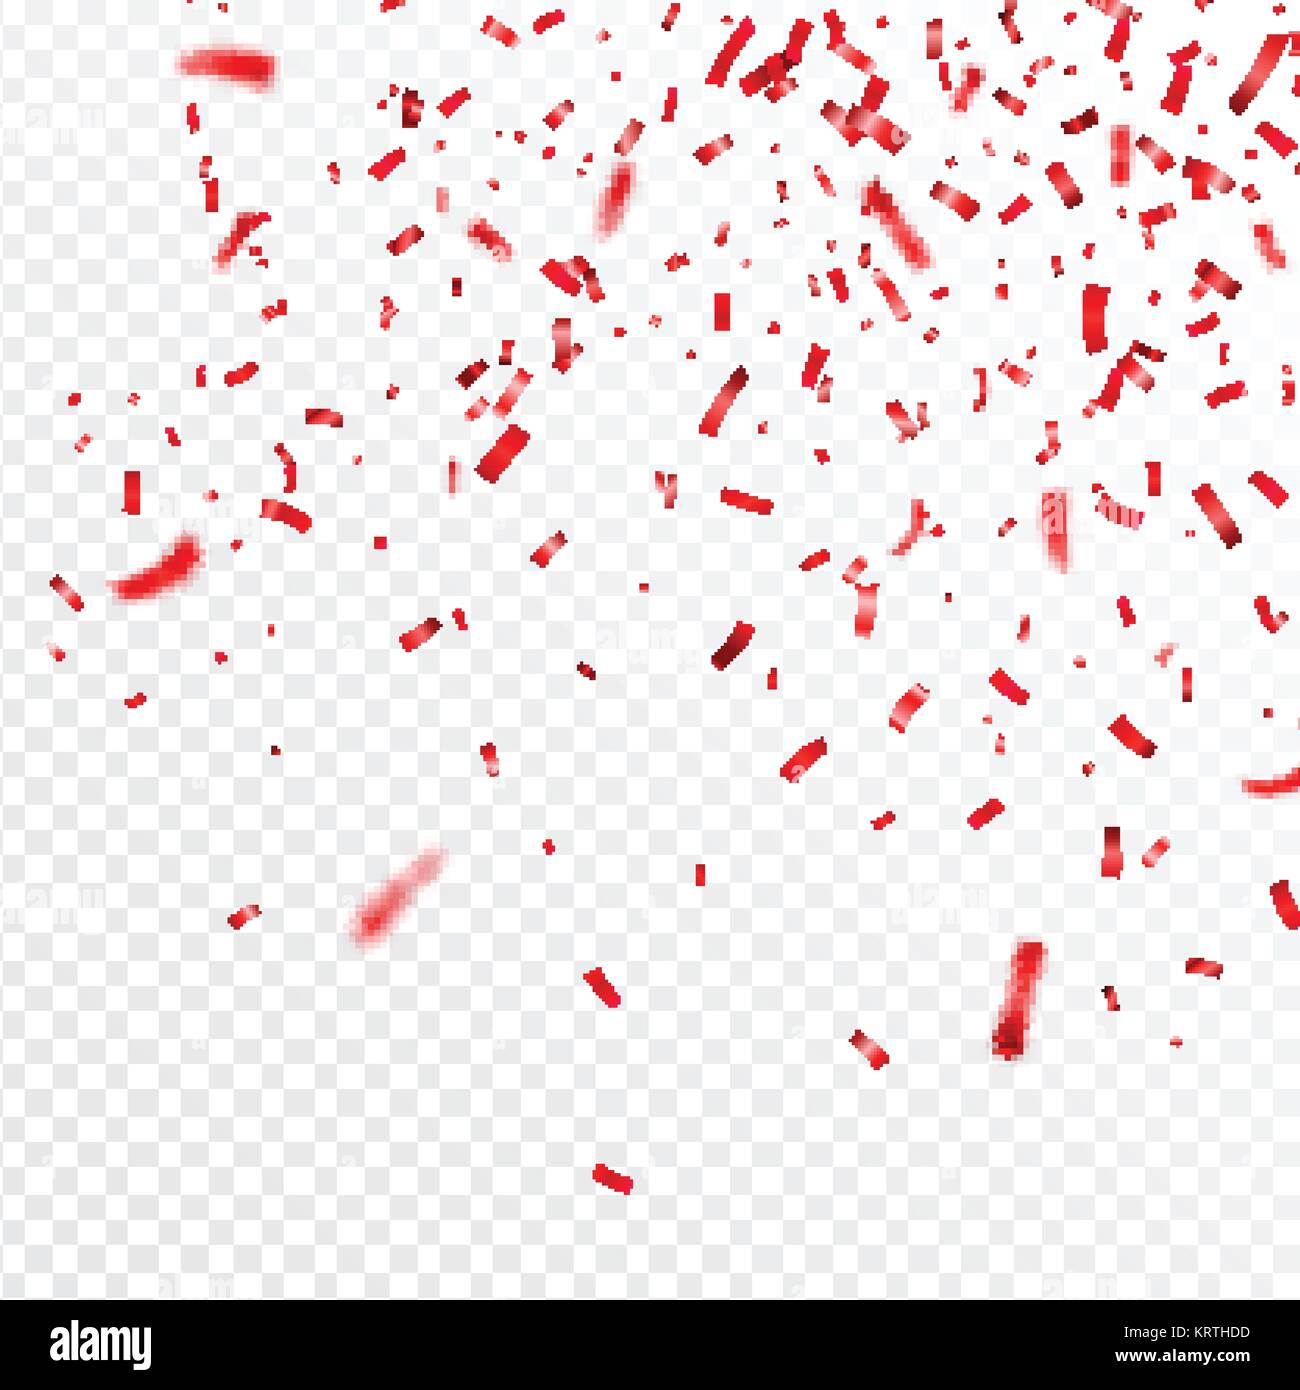 Weihnachten, Valentinstag rot Konfetti auf transparentem Hintergrund.  Fallende glänzend Konfetti glitzert. Festliche Party Design Elemente  Stock-Vektorgrafik - Alamy